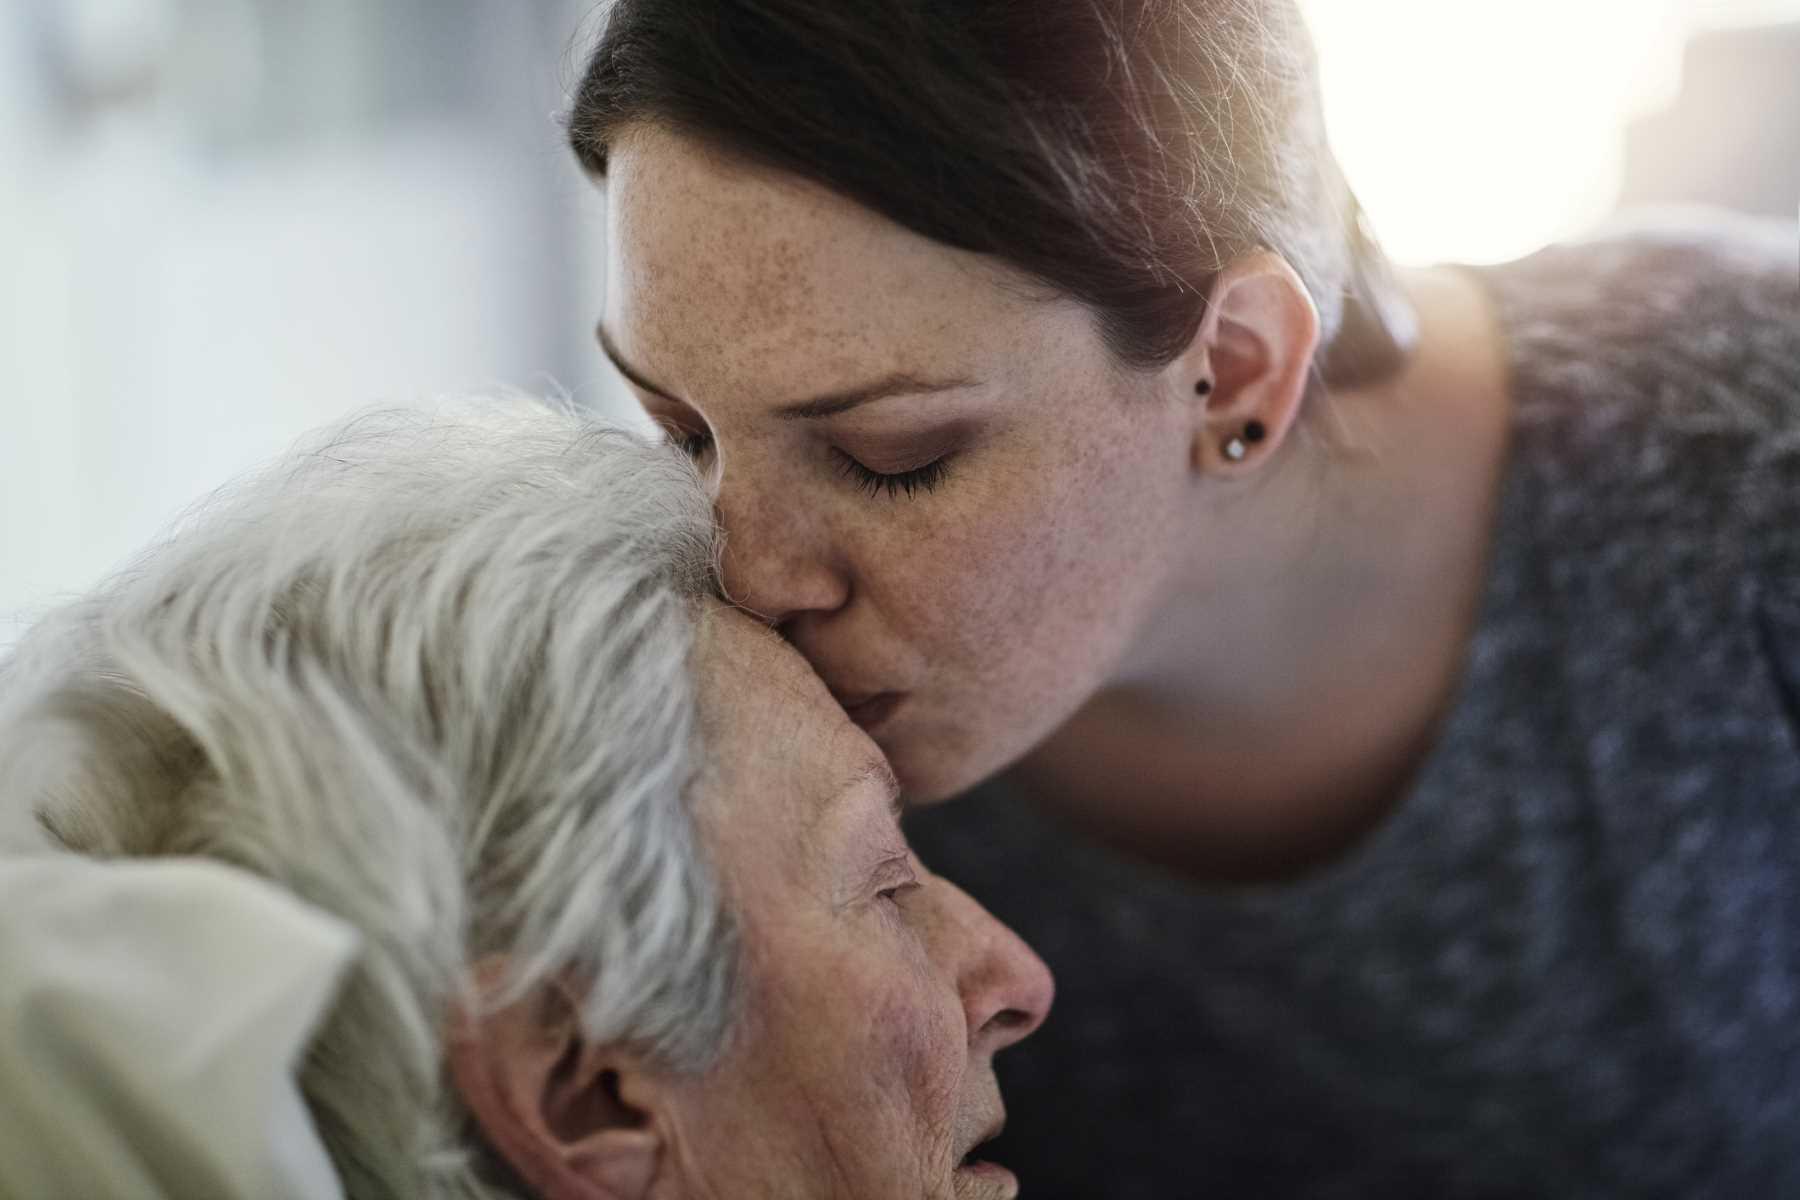 Zweitmeinung Intensiv: Jüngere Frau küsst ältere pflegebedürftige Frau auf die Stirn.